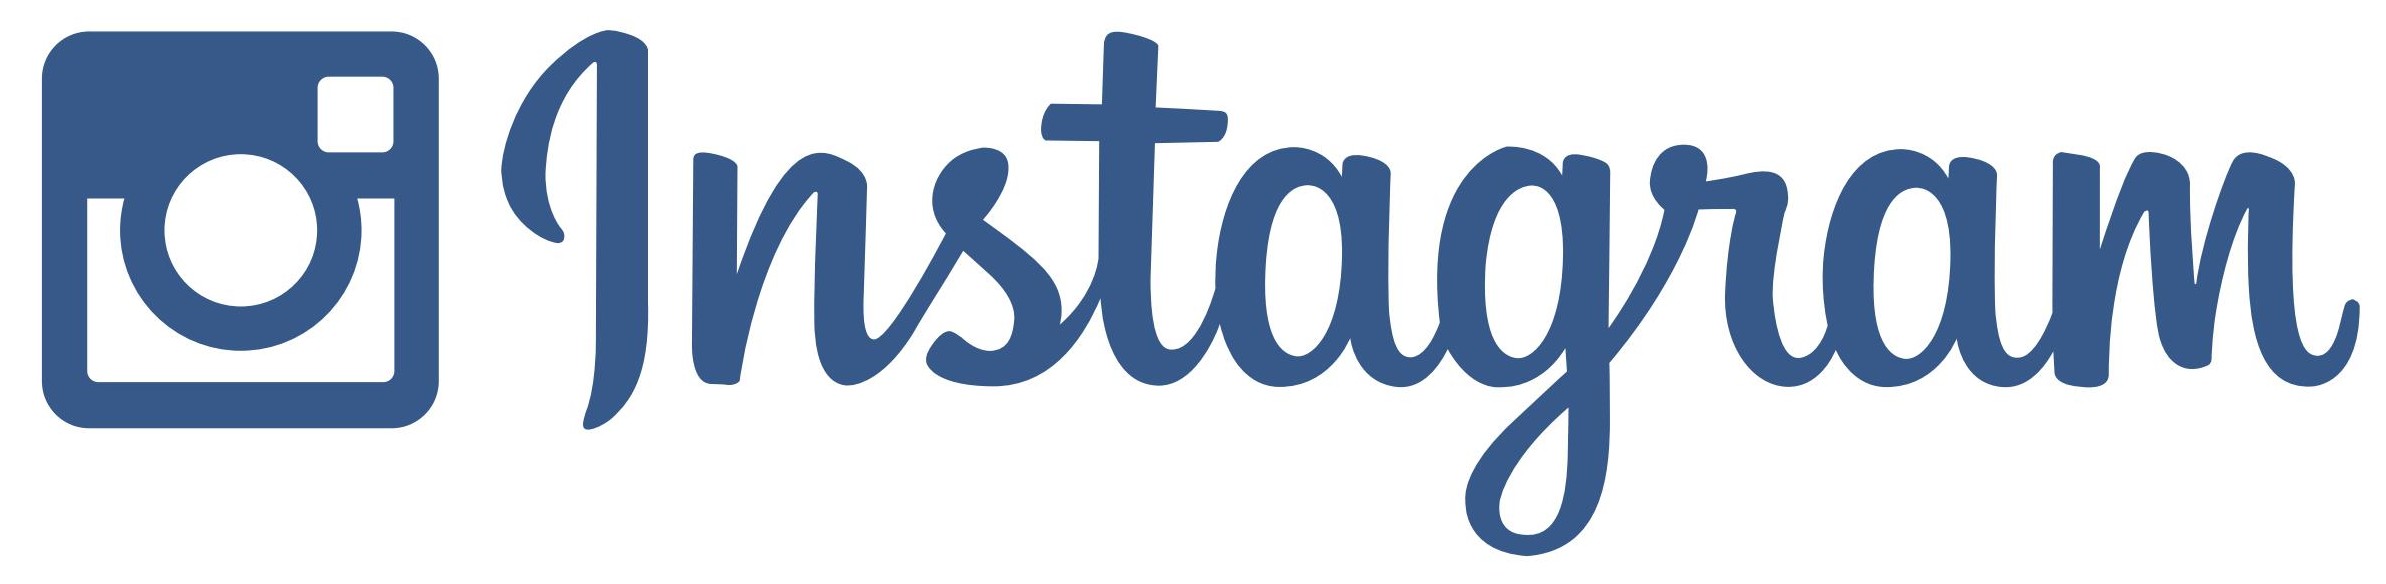 Instagram_logo_vector-2